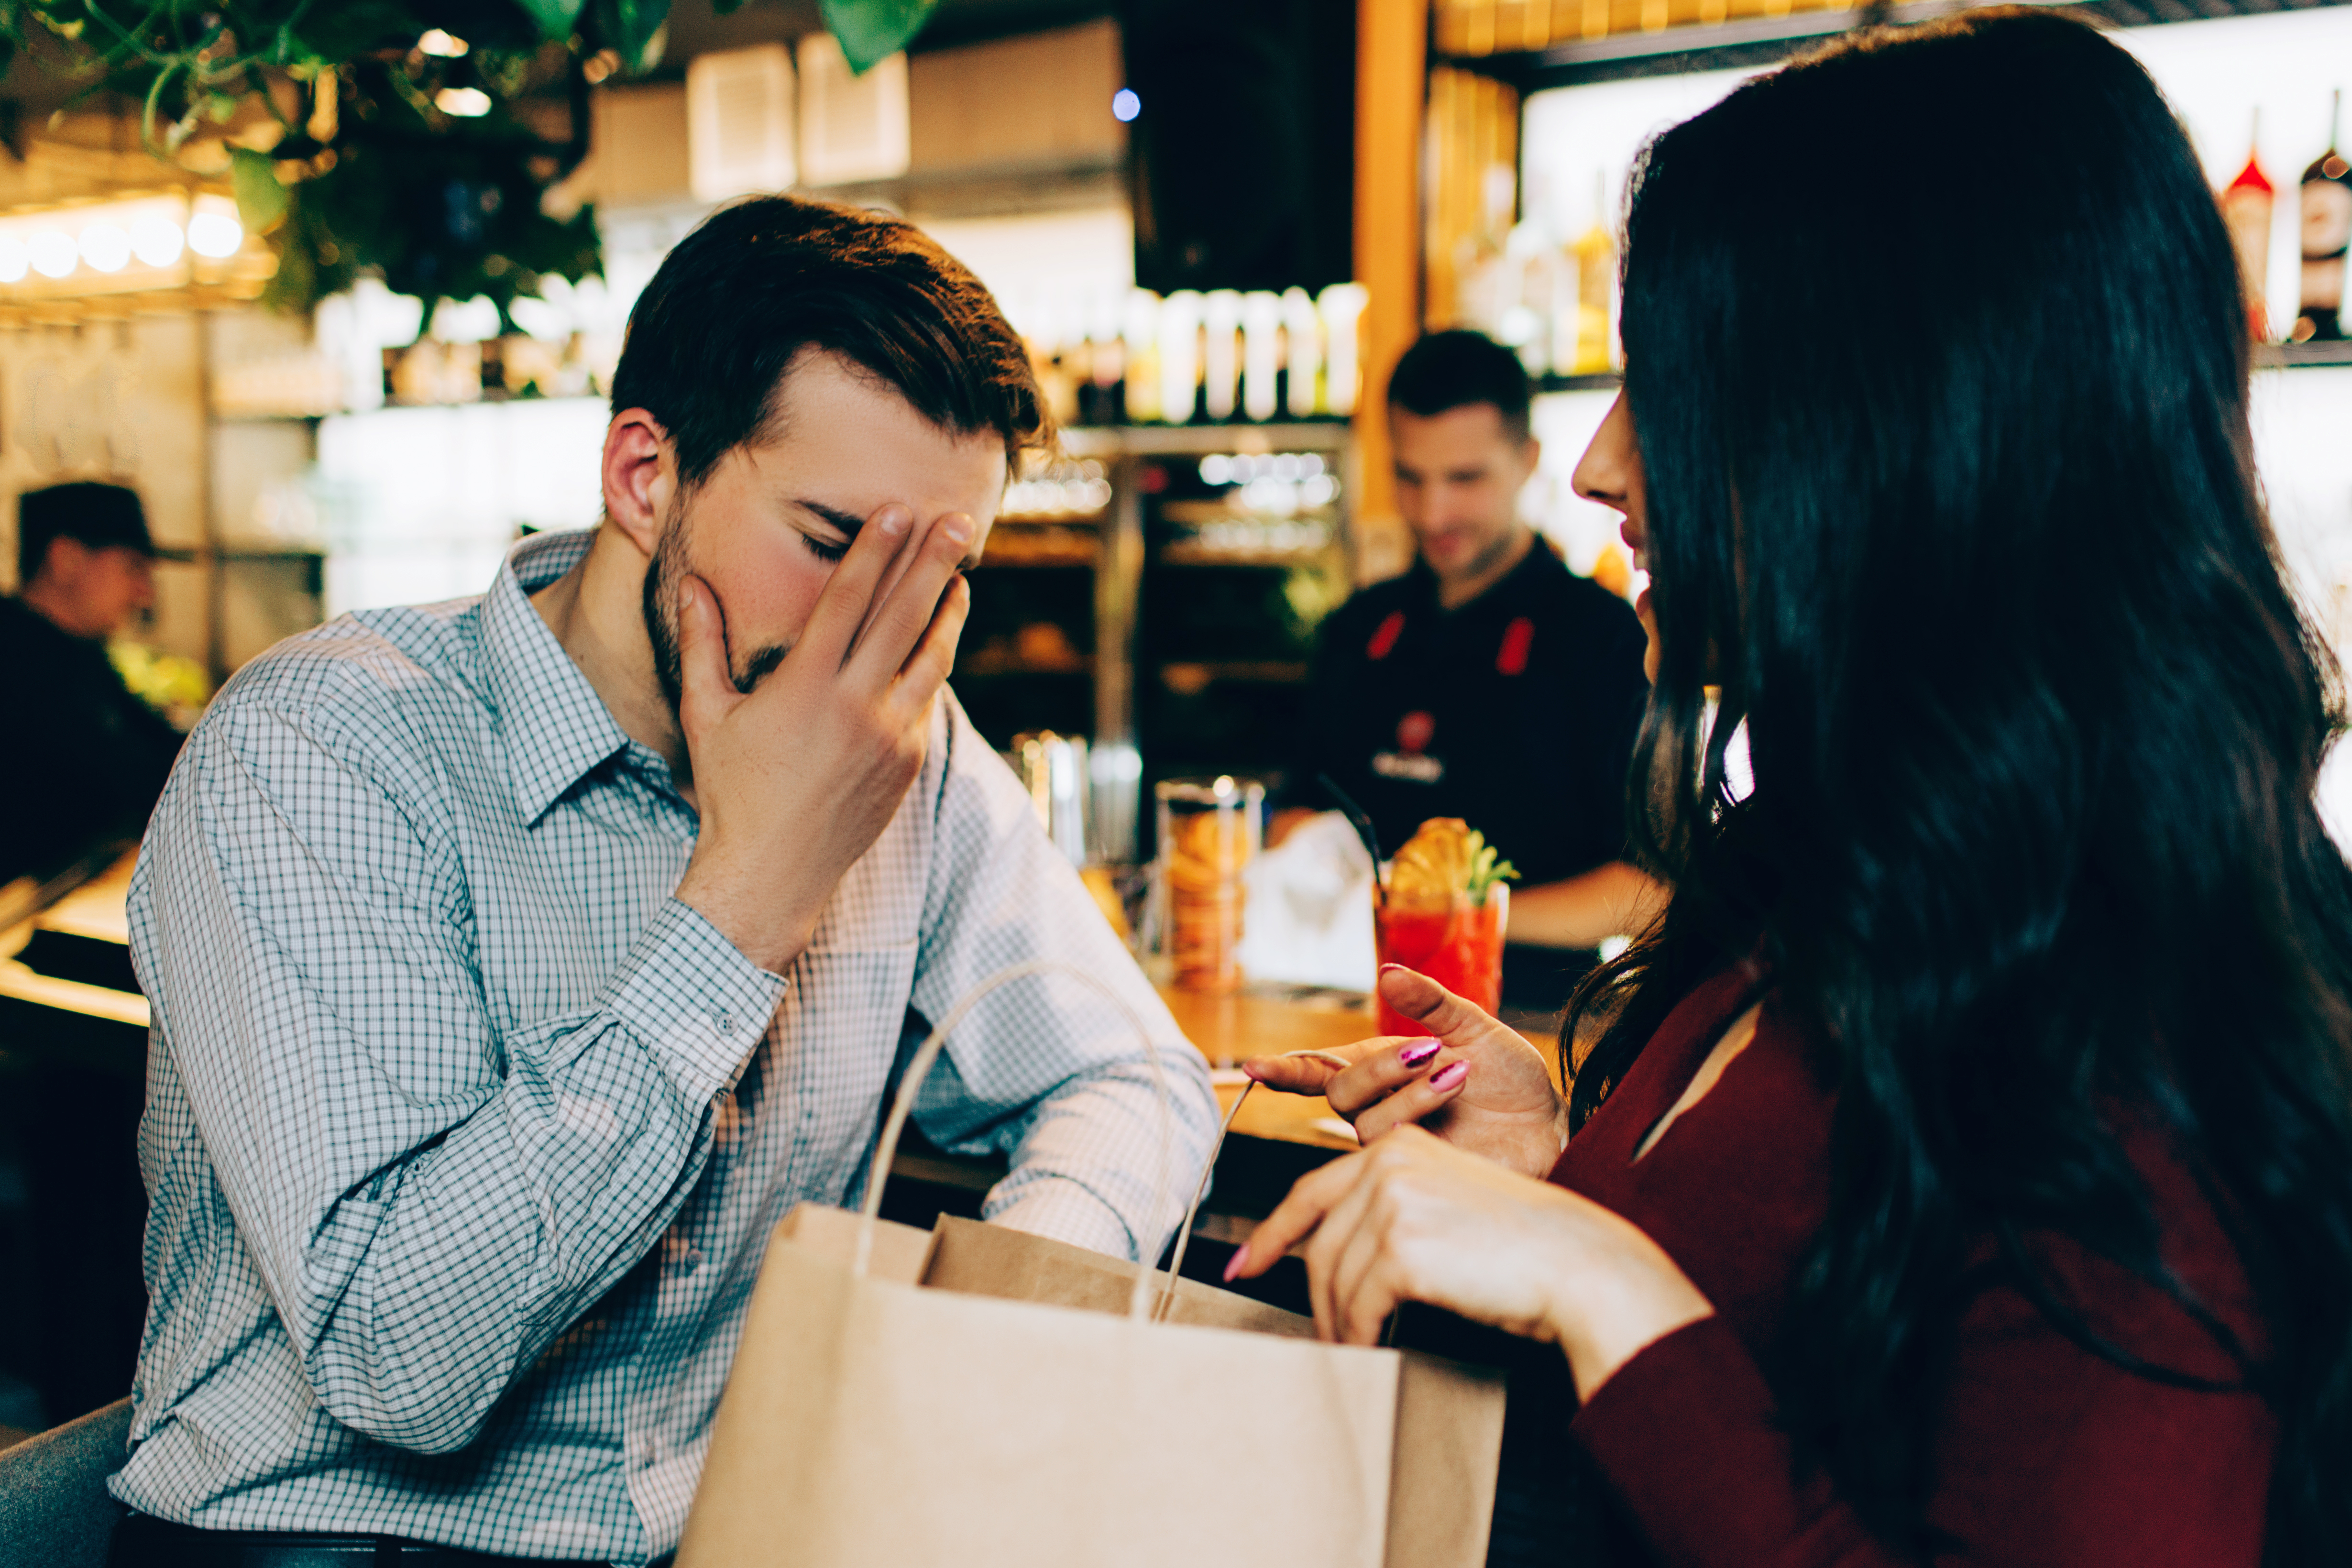 Un homme met son visage dans sa main pendant que la femme en face de lui continue de parler | Source : Shutterstock